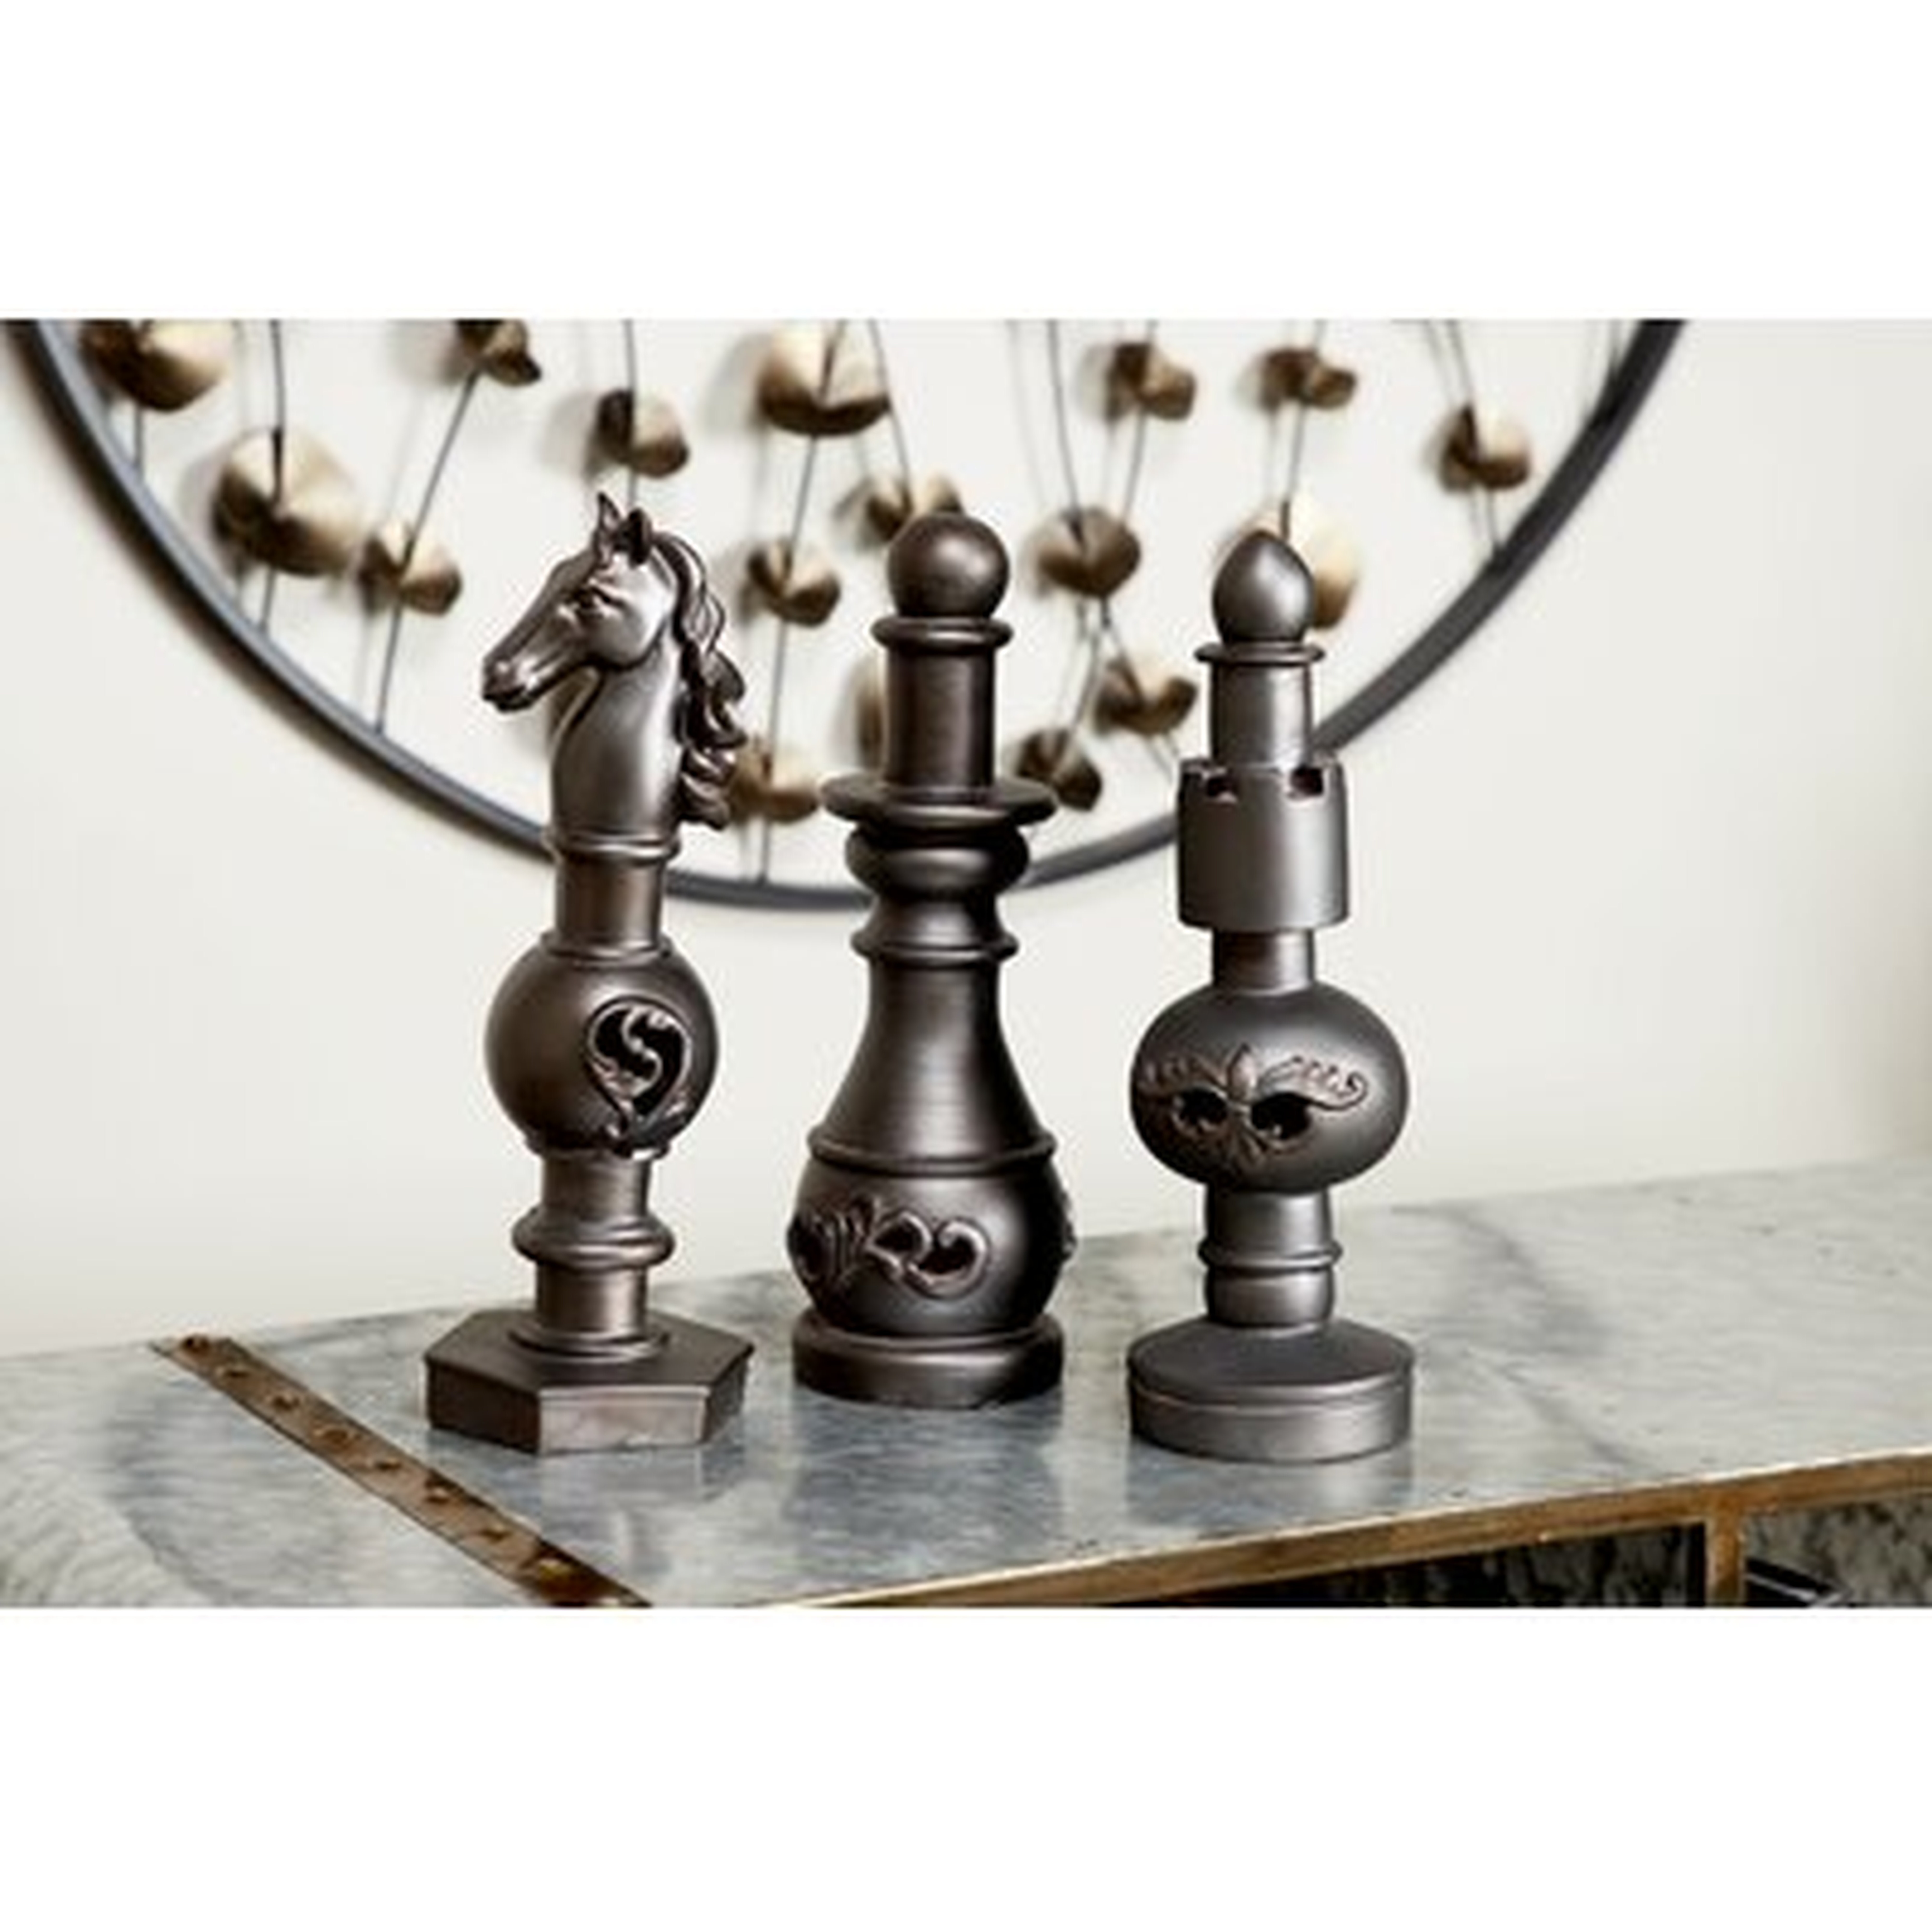 3 Piece Haddad Chess Finials Table Decor Sculpture Set - Wayfair